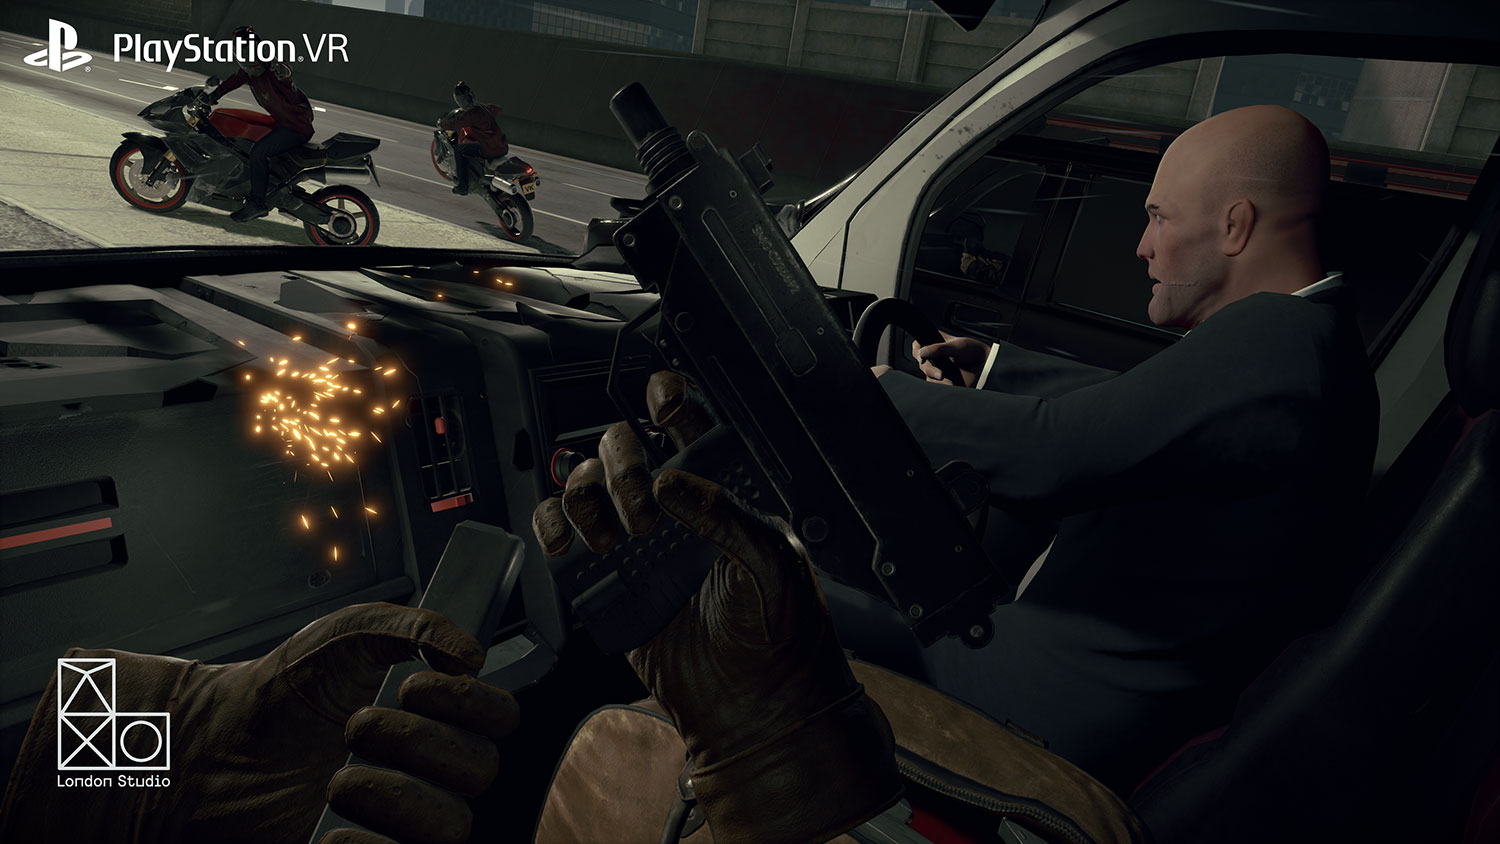 PS4 VR Screenshots